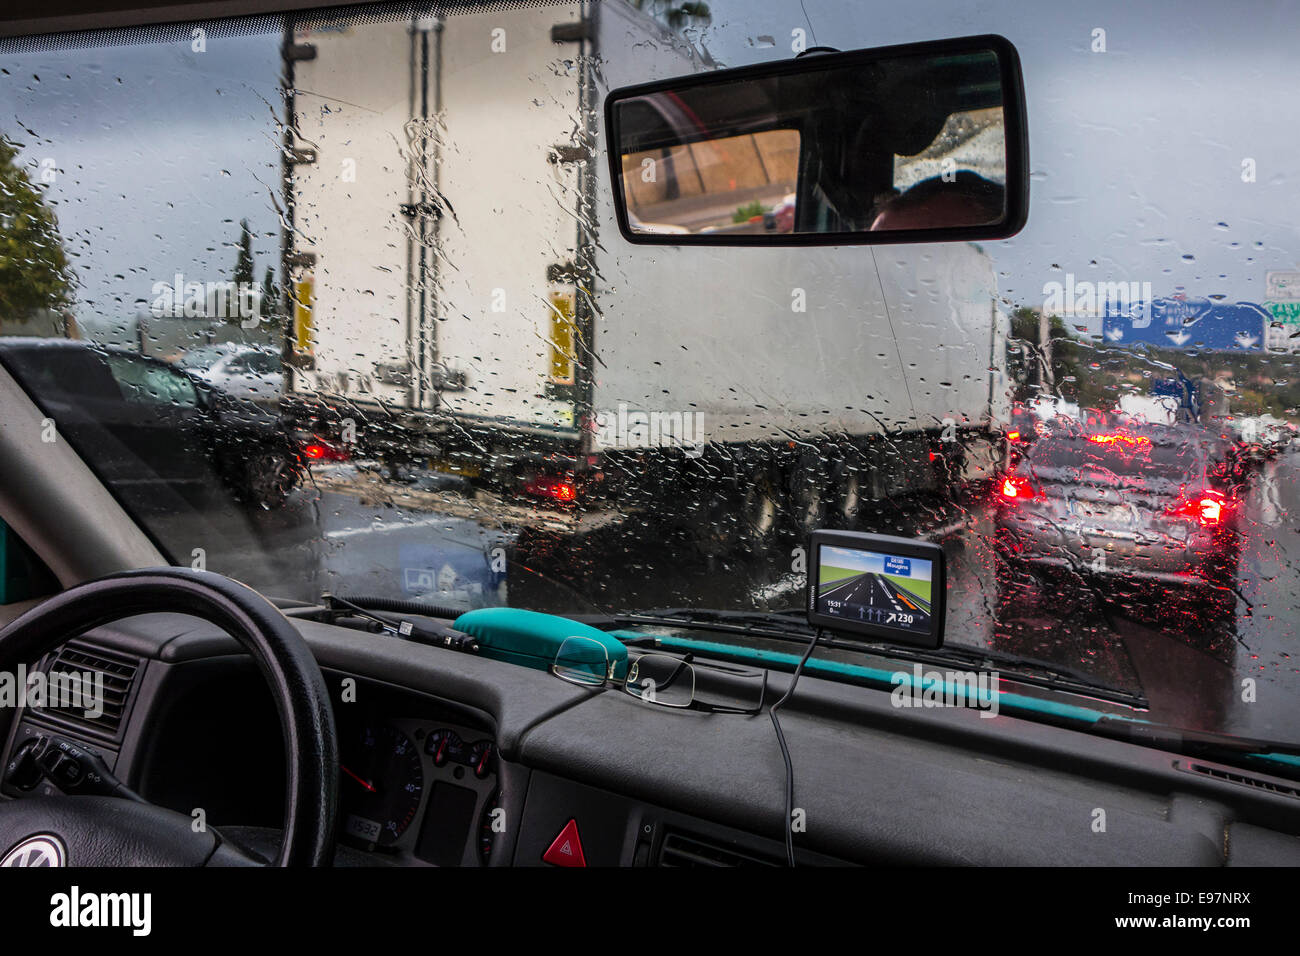 LKW, Autos auf der Autobahn überholen während starkem Regendusche innerhalb des Fahrzeugs mit großen Regentropfen auf der Windschutzscheibe aus gesehen Stockfoto